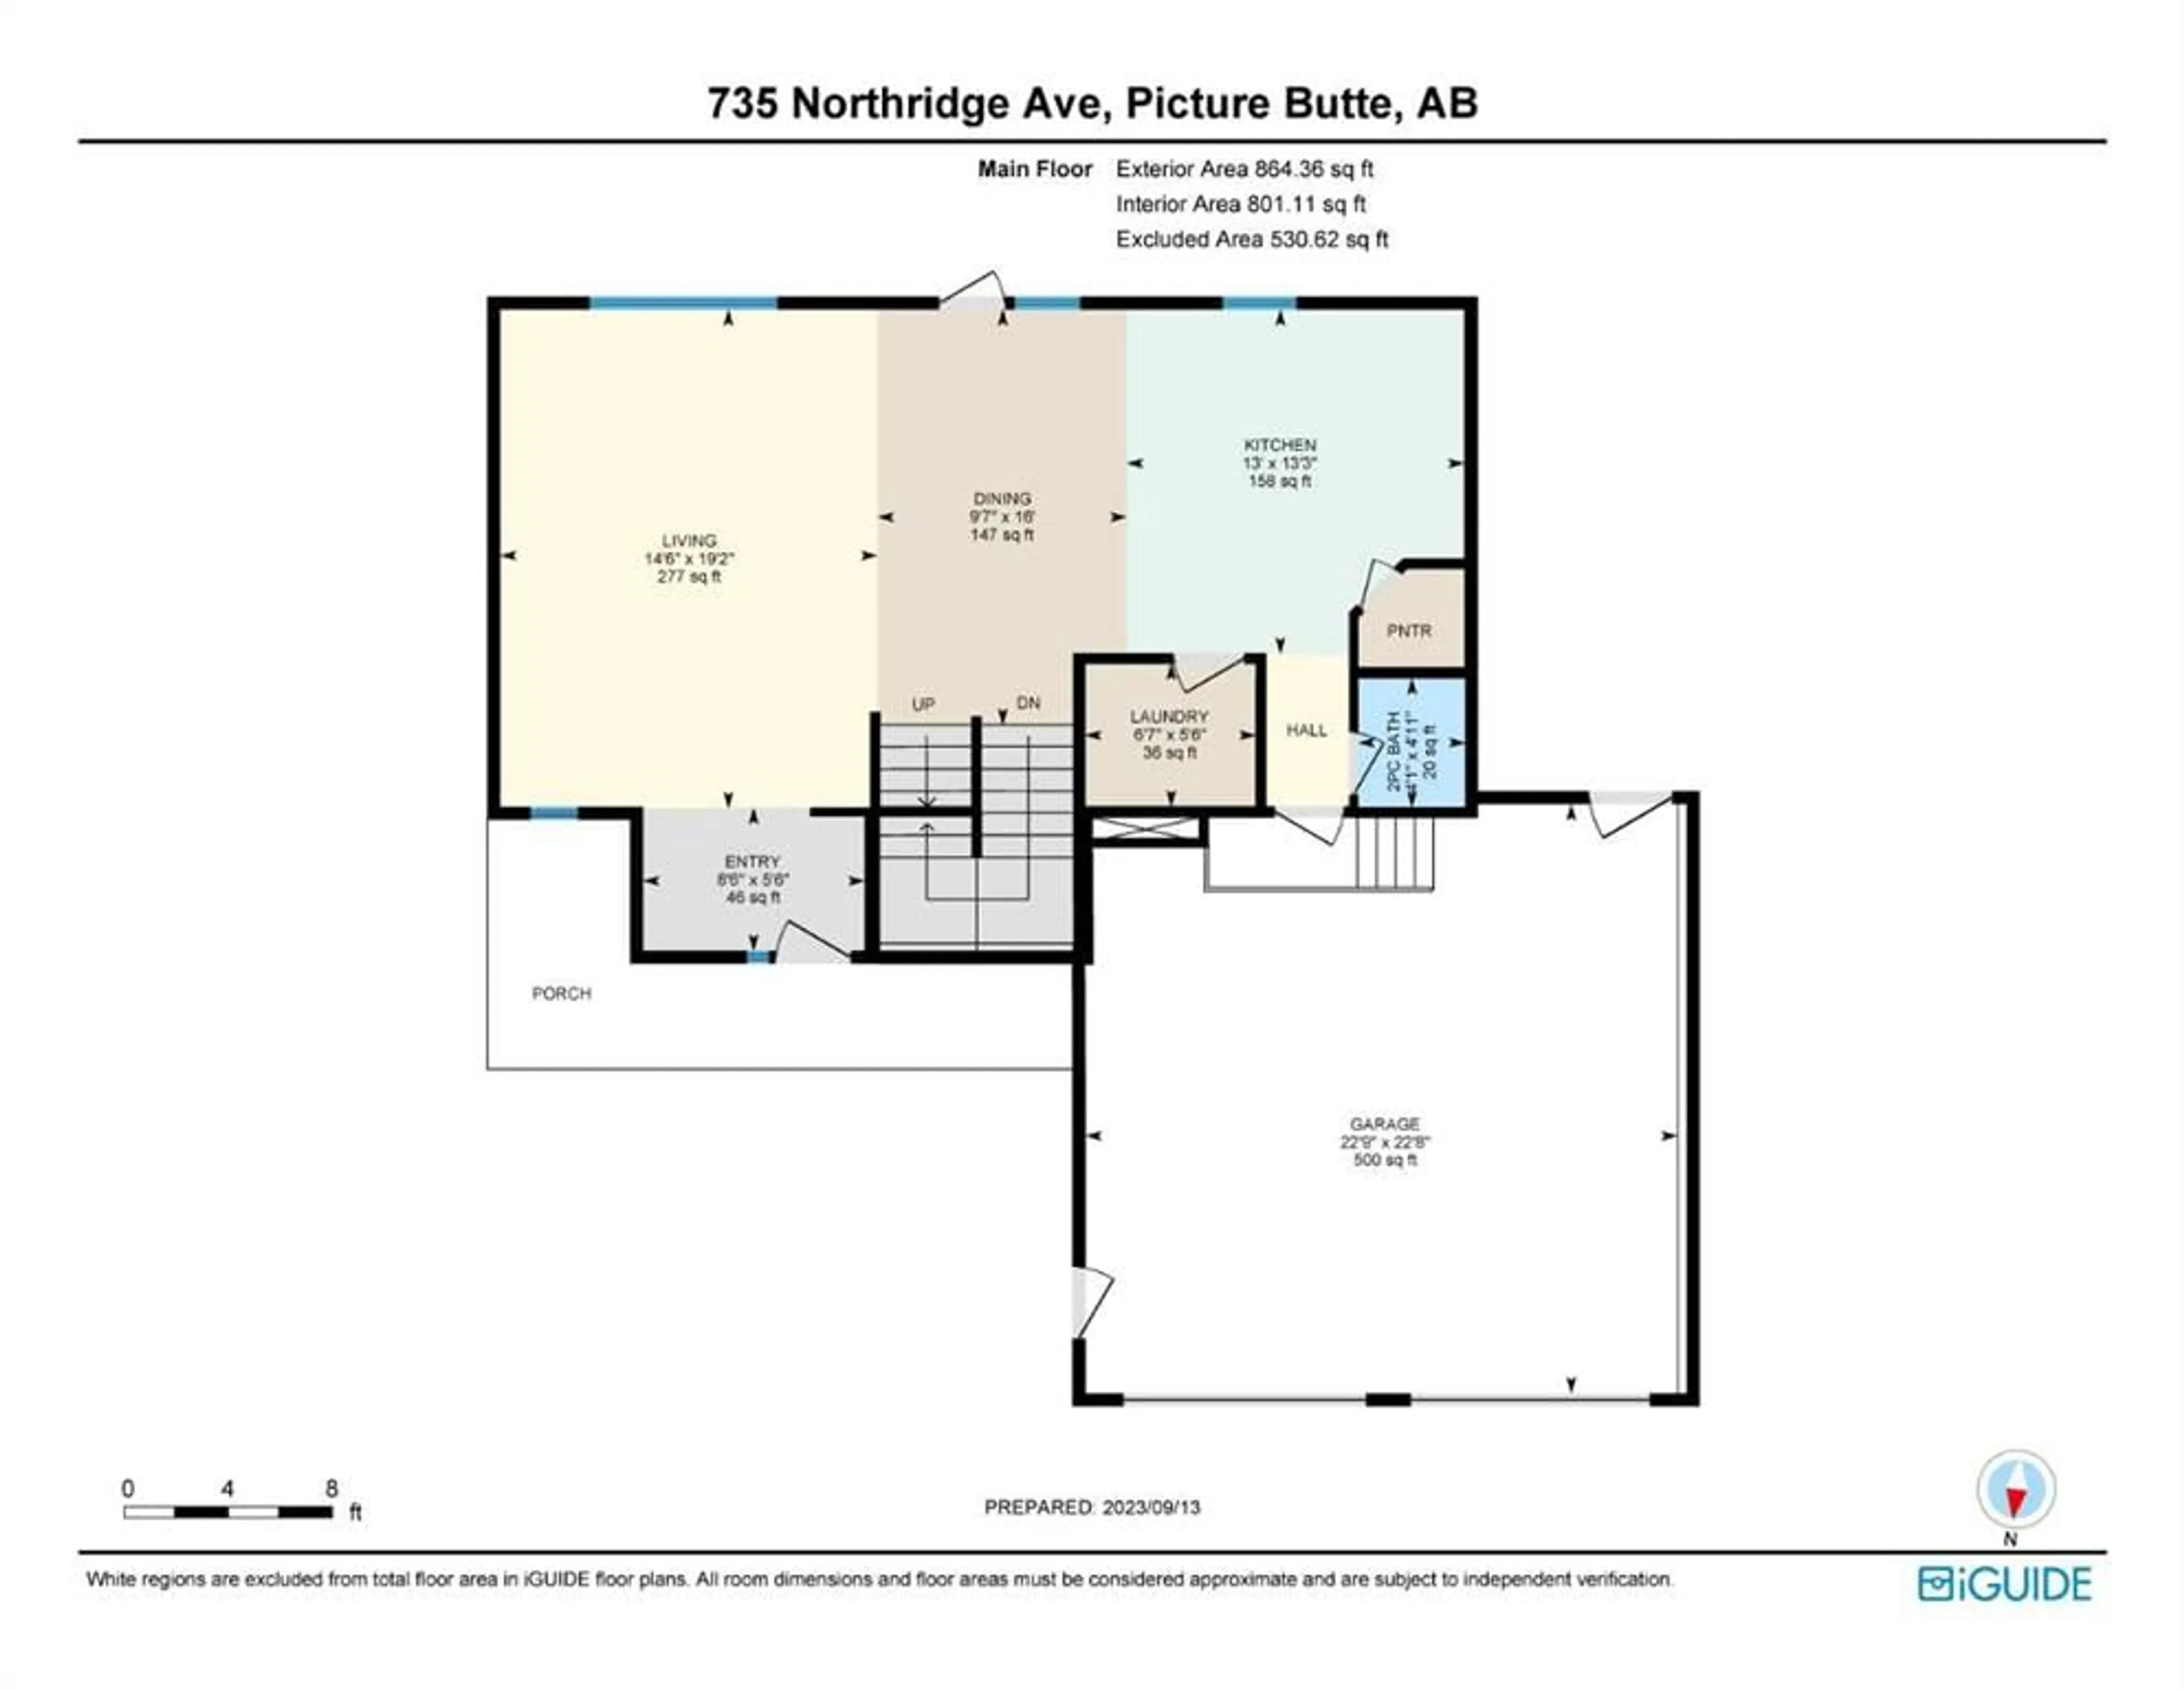 Floor plan for 735 Northridge Ave, Picture Butte Alberta T0K 1V0